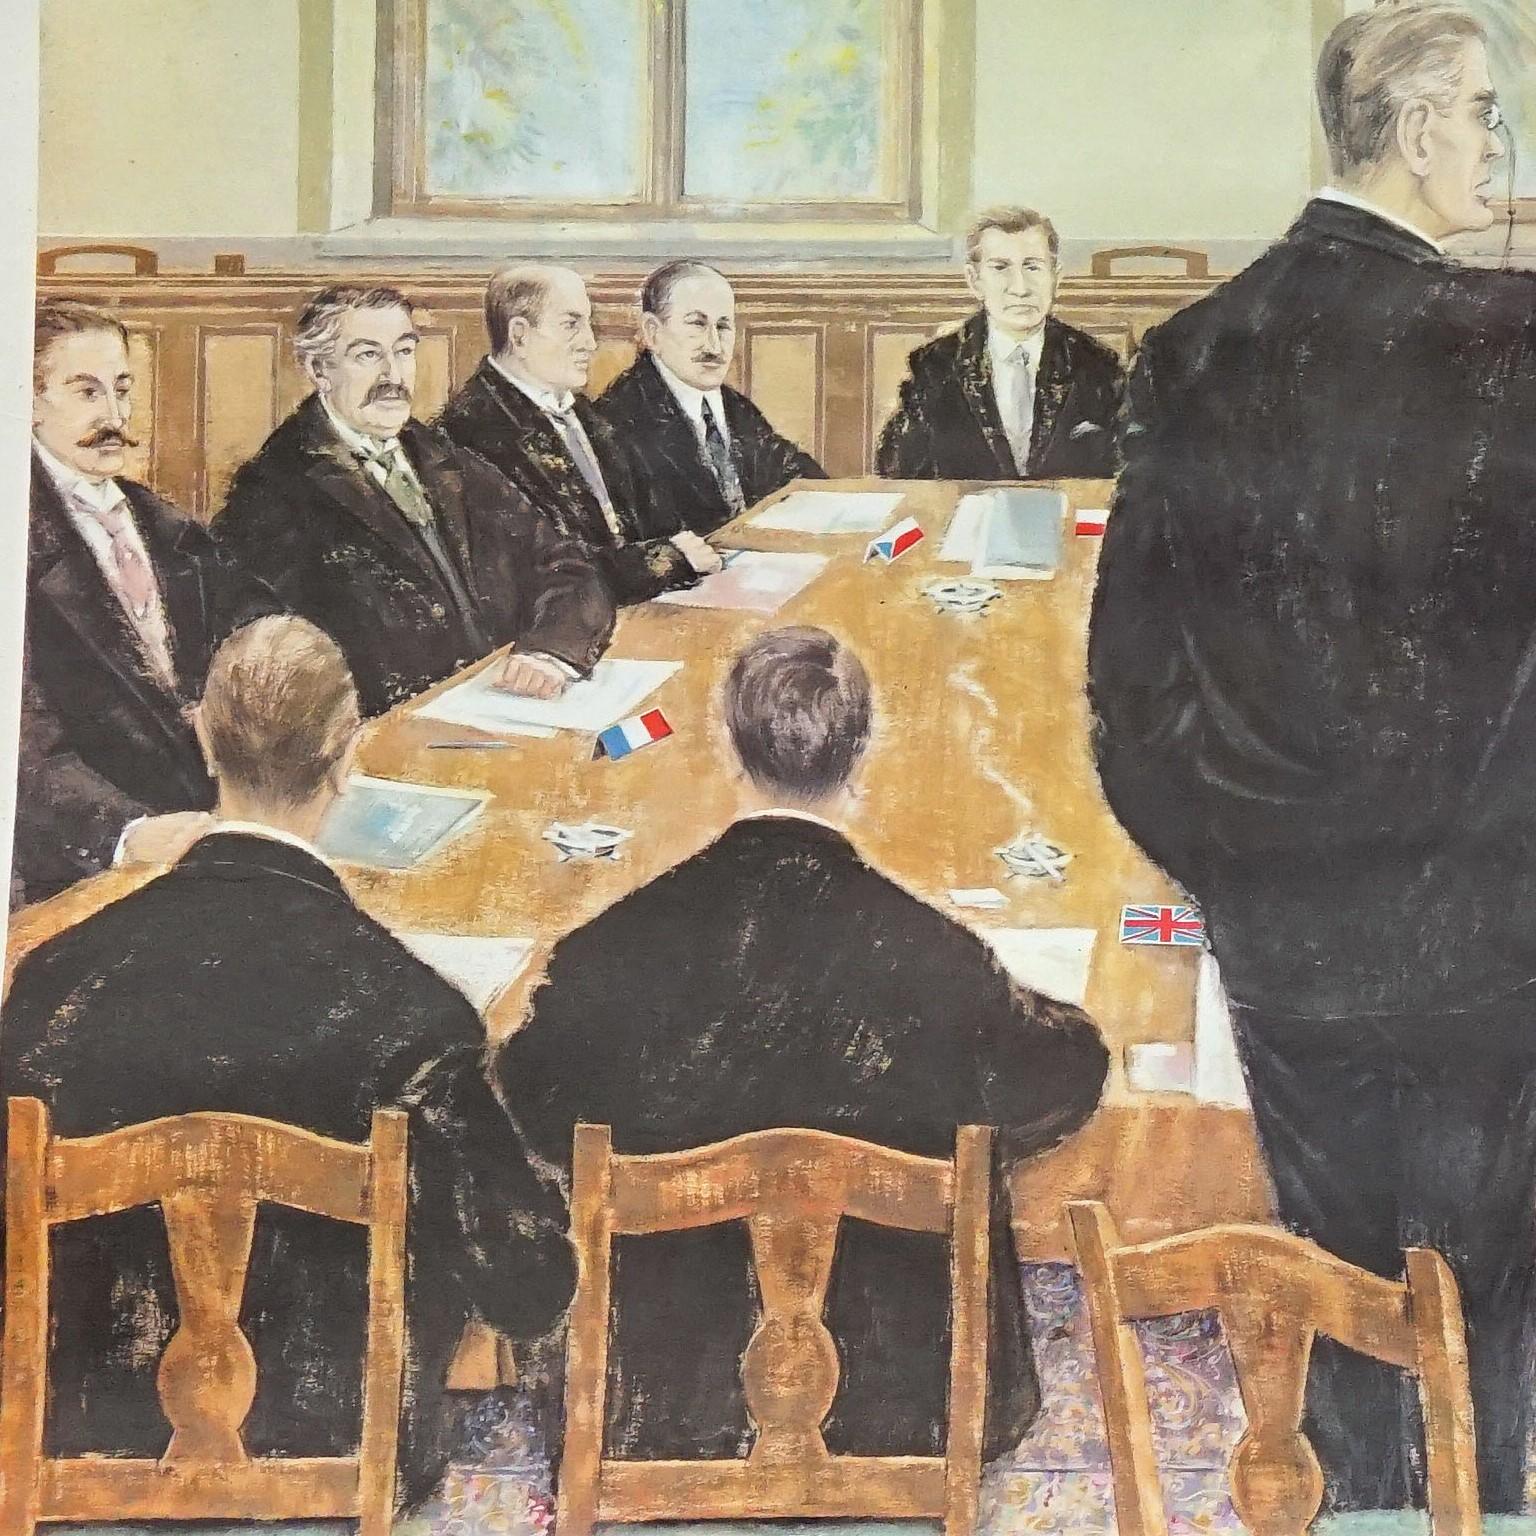 Die Vintage-Wandtafel zeigt eine Szene bei der Unterzeichnung des Vertrags von Locarno, Weimarer Republik, Ende des Ersten Weltkriegs. Farbenfroher Druck auf mit Leinwand verstärktem Papier.
Abmessungen:
Breite 76 cm (29,92 Zoll)
Höhe 55 cm (21,65